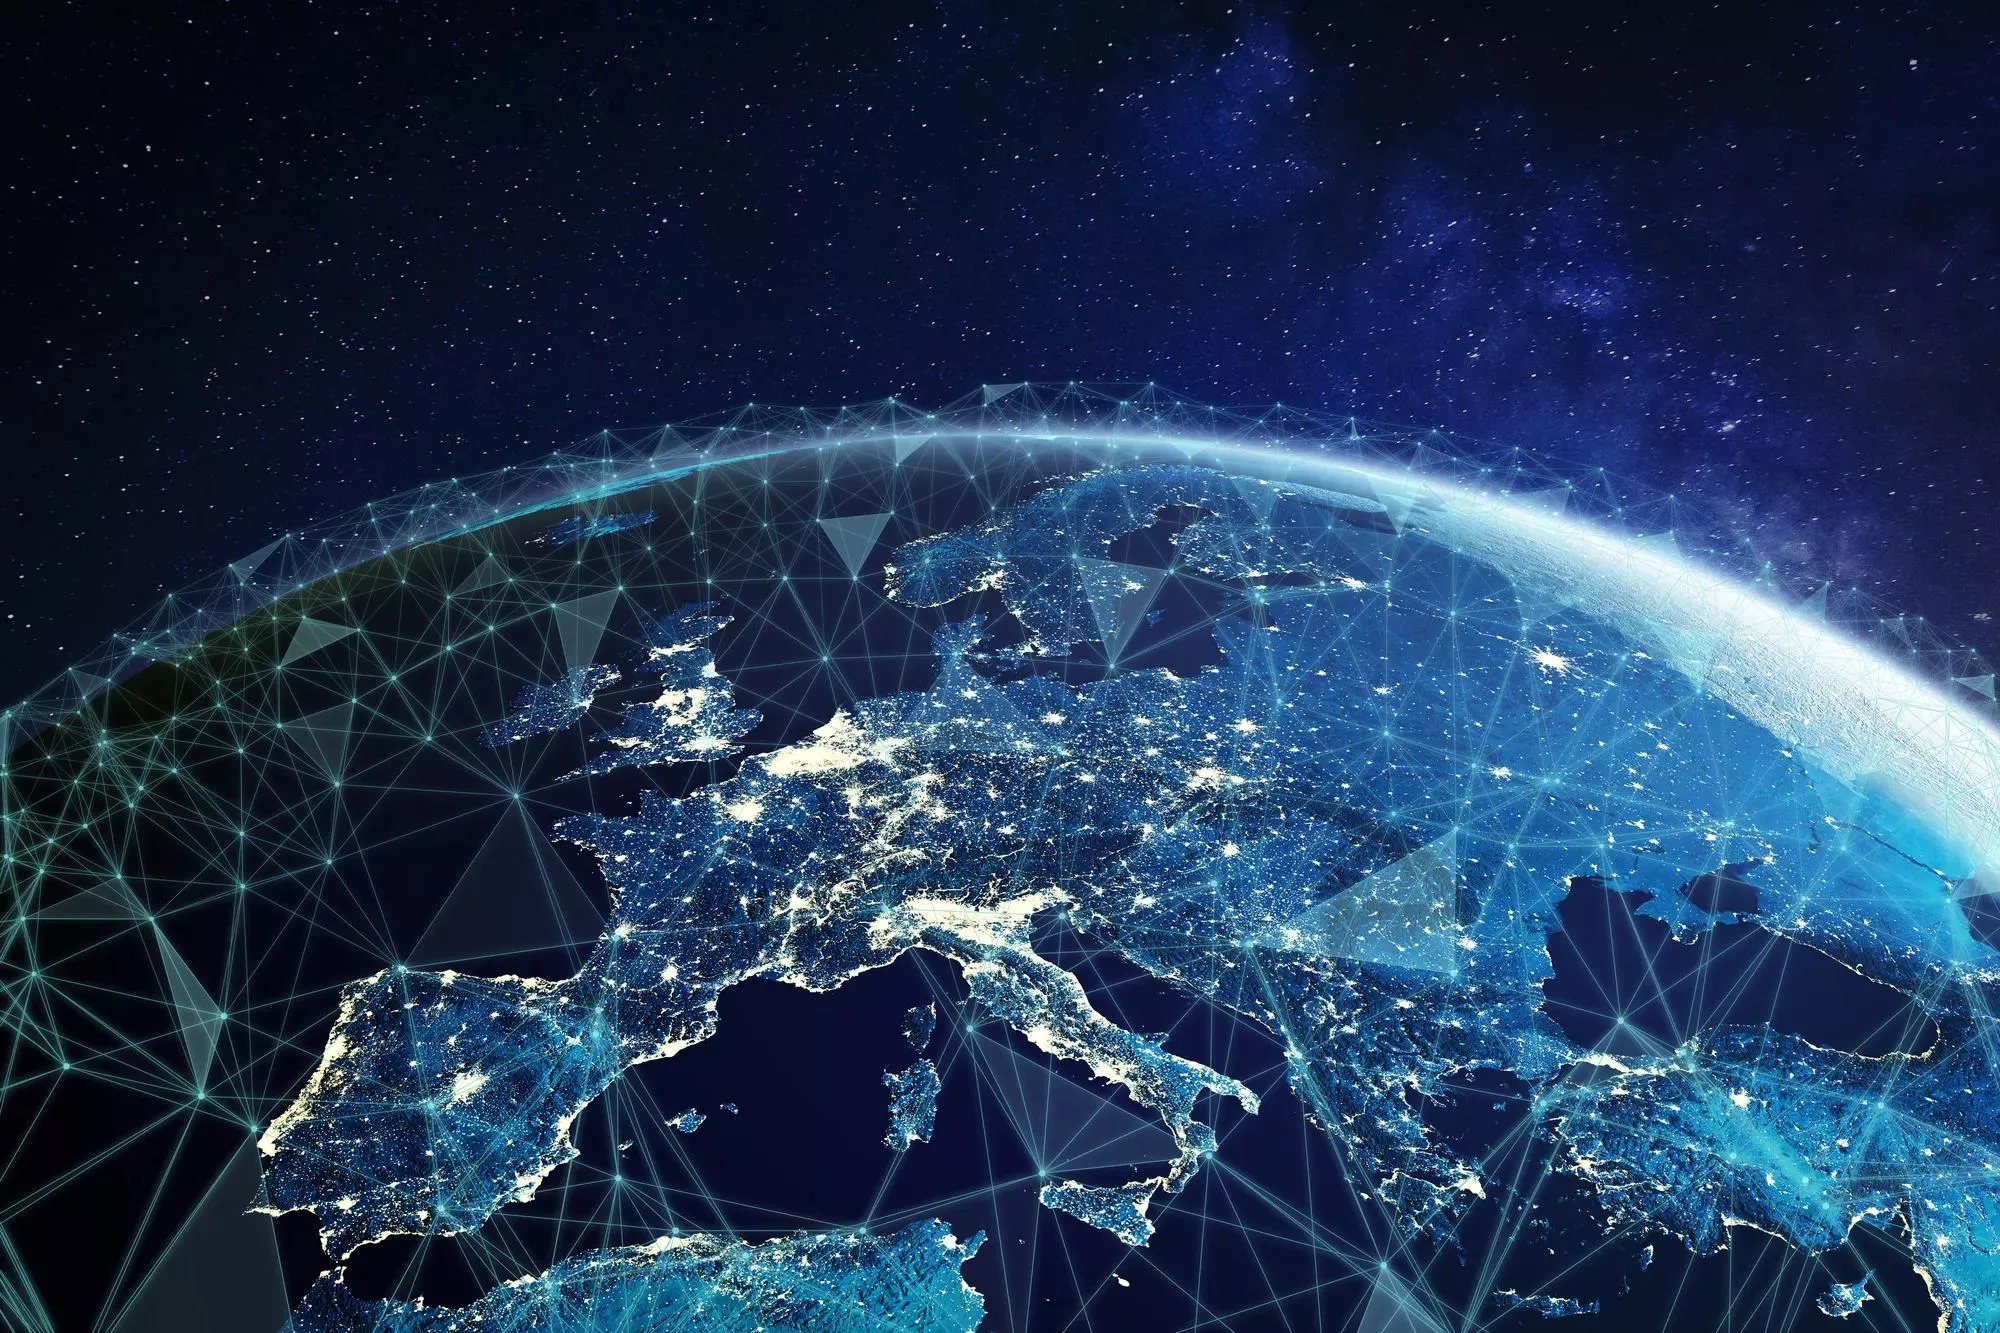 Tietoliikenneverkko Euroopan yläpuolella avaruudesta katsottuna yhdistettynä järjestelmä eurooppalaiseen 5g LTE -mobiiliverkkoon, globaaliin WiFi-yhteyteen, Internet of Things (IoT) -teknologiaan tai blockchain fintechiin